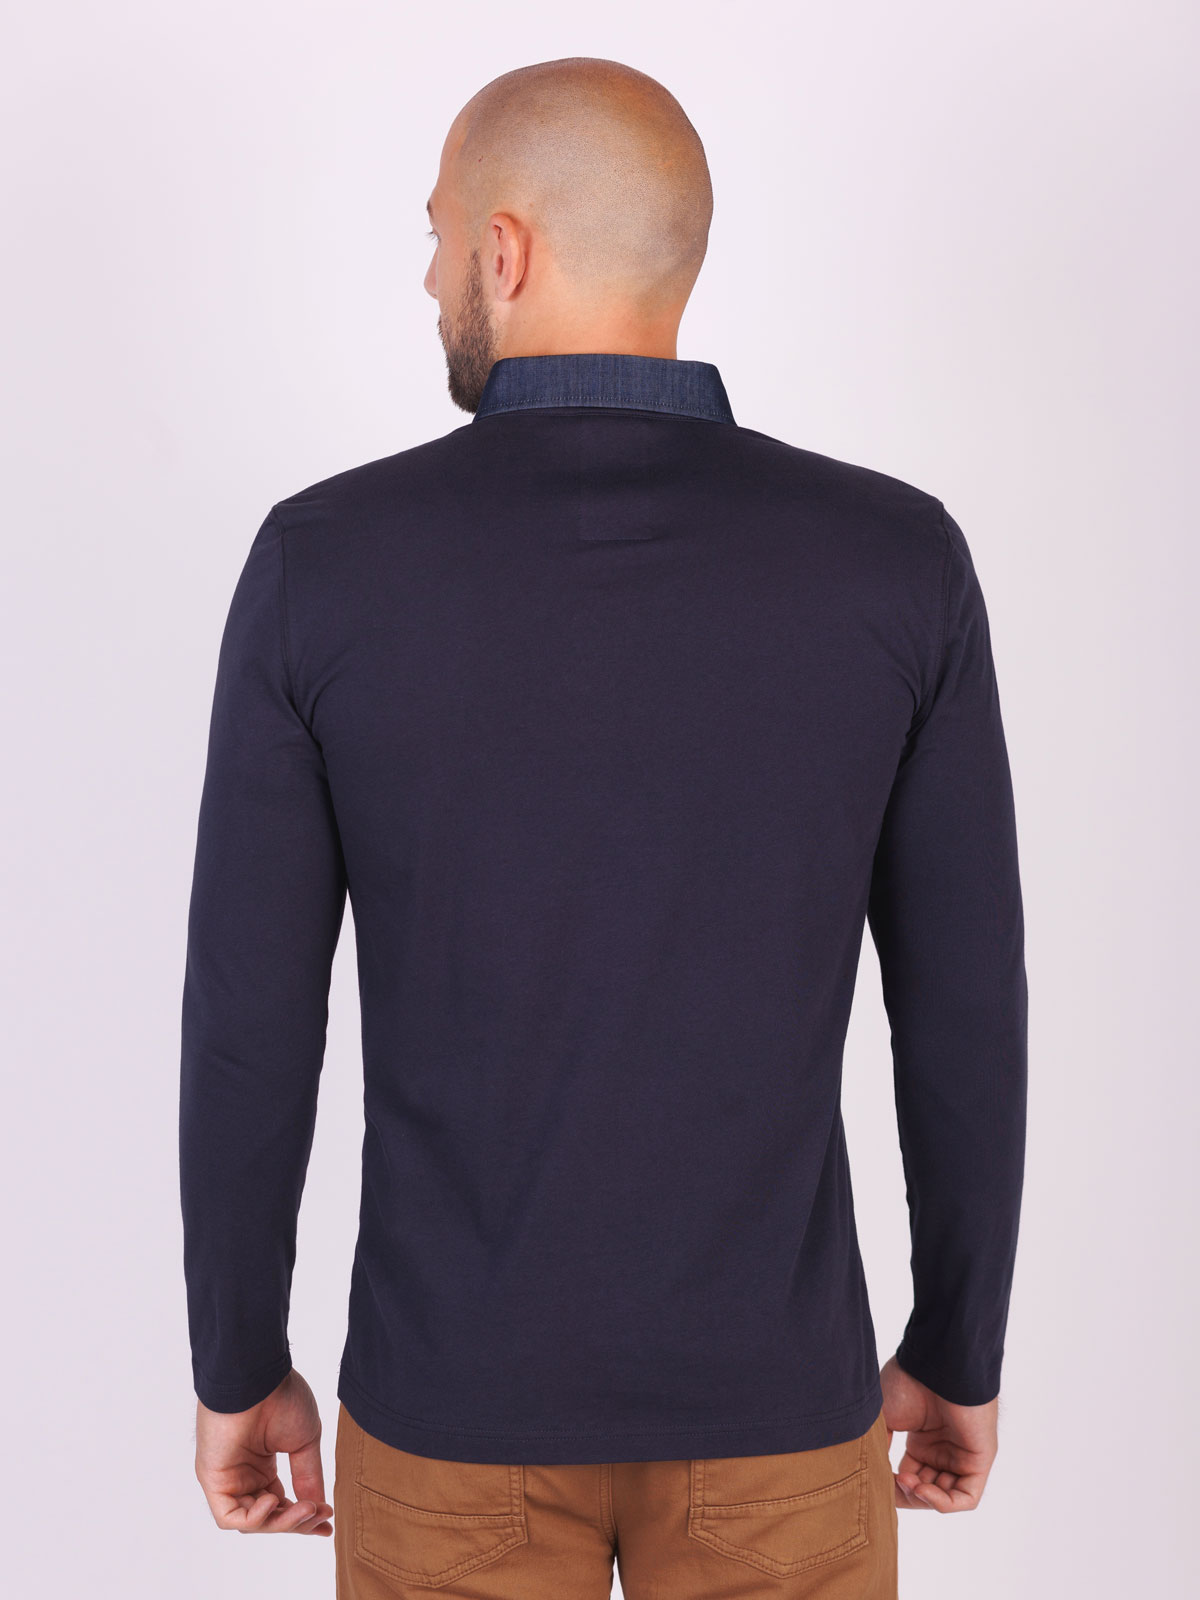 Ανδρική μπλούζα με τζιν γιακά - 18266 € 34.31 img2